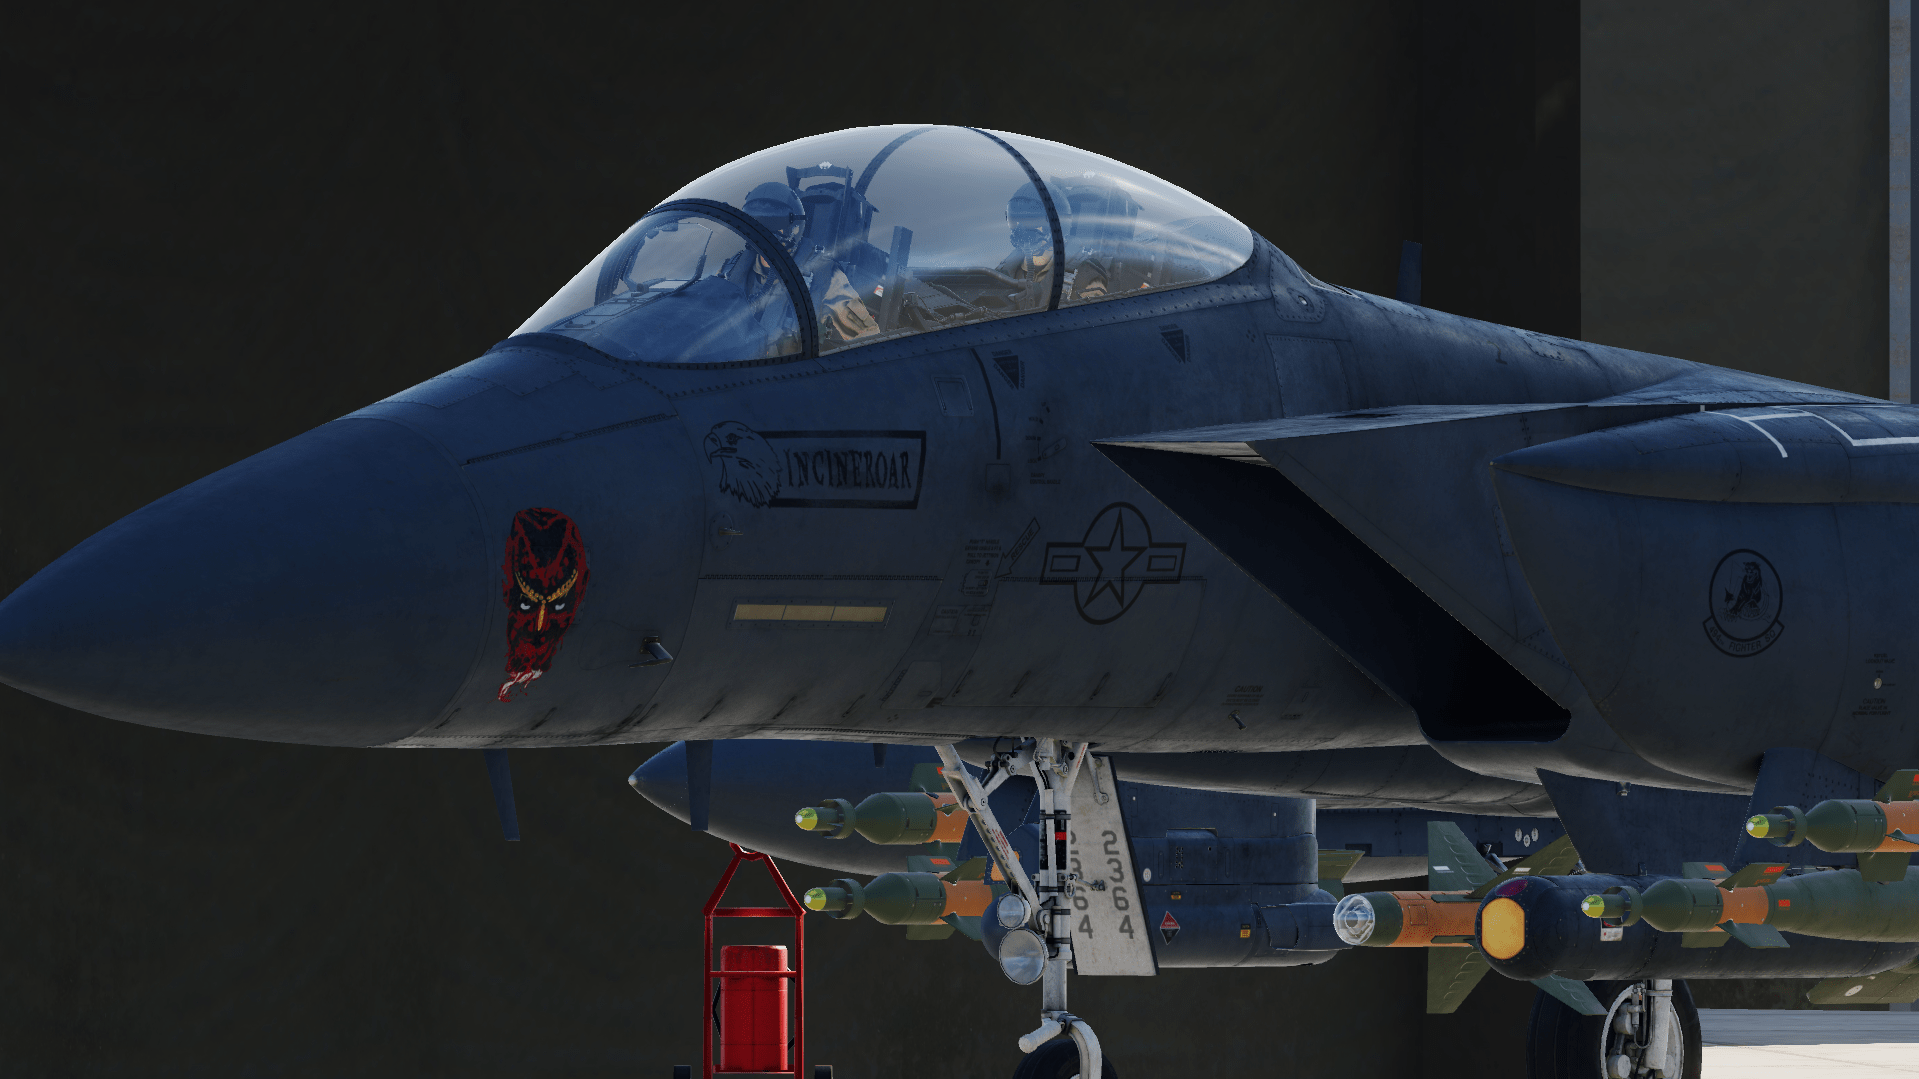 F-15E Strike eagle LN 92-364 "Incineroar"